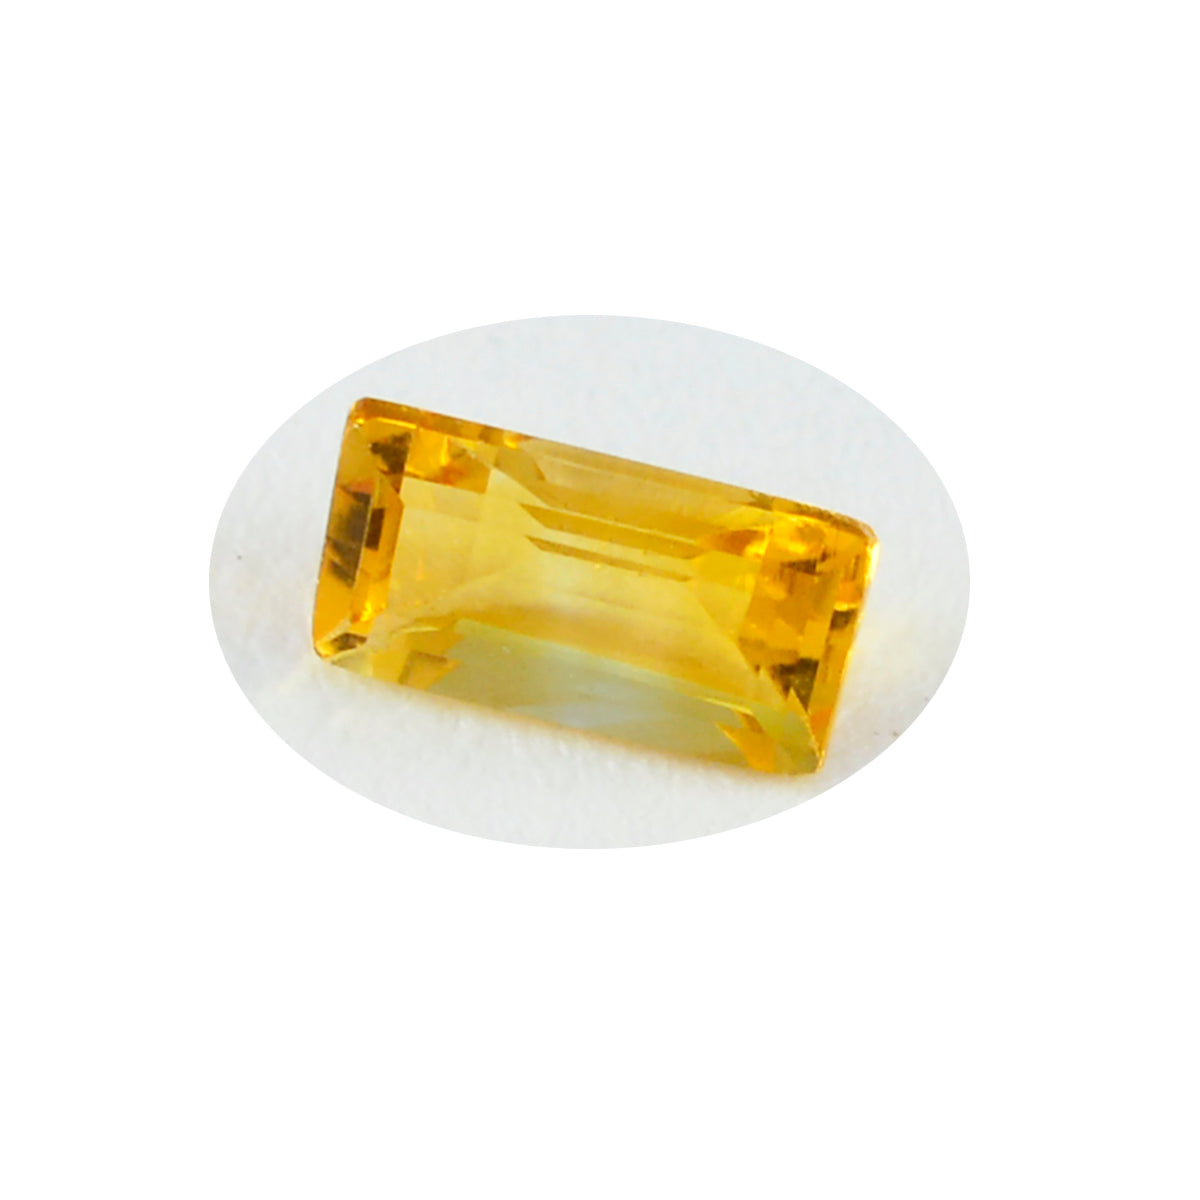 riyogems 1 pezzo di vero citrino giallo sfaccettato 5x10 mm a forma di baguette, gemma sfusa di qualità eccezionale